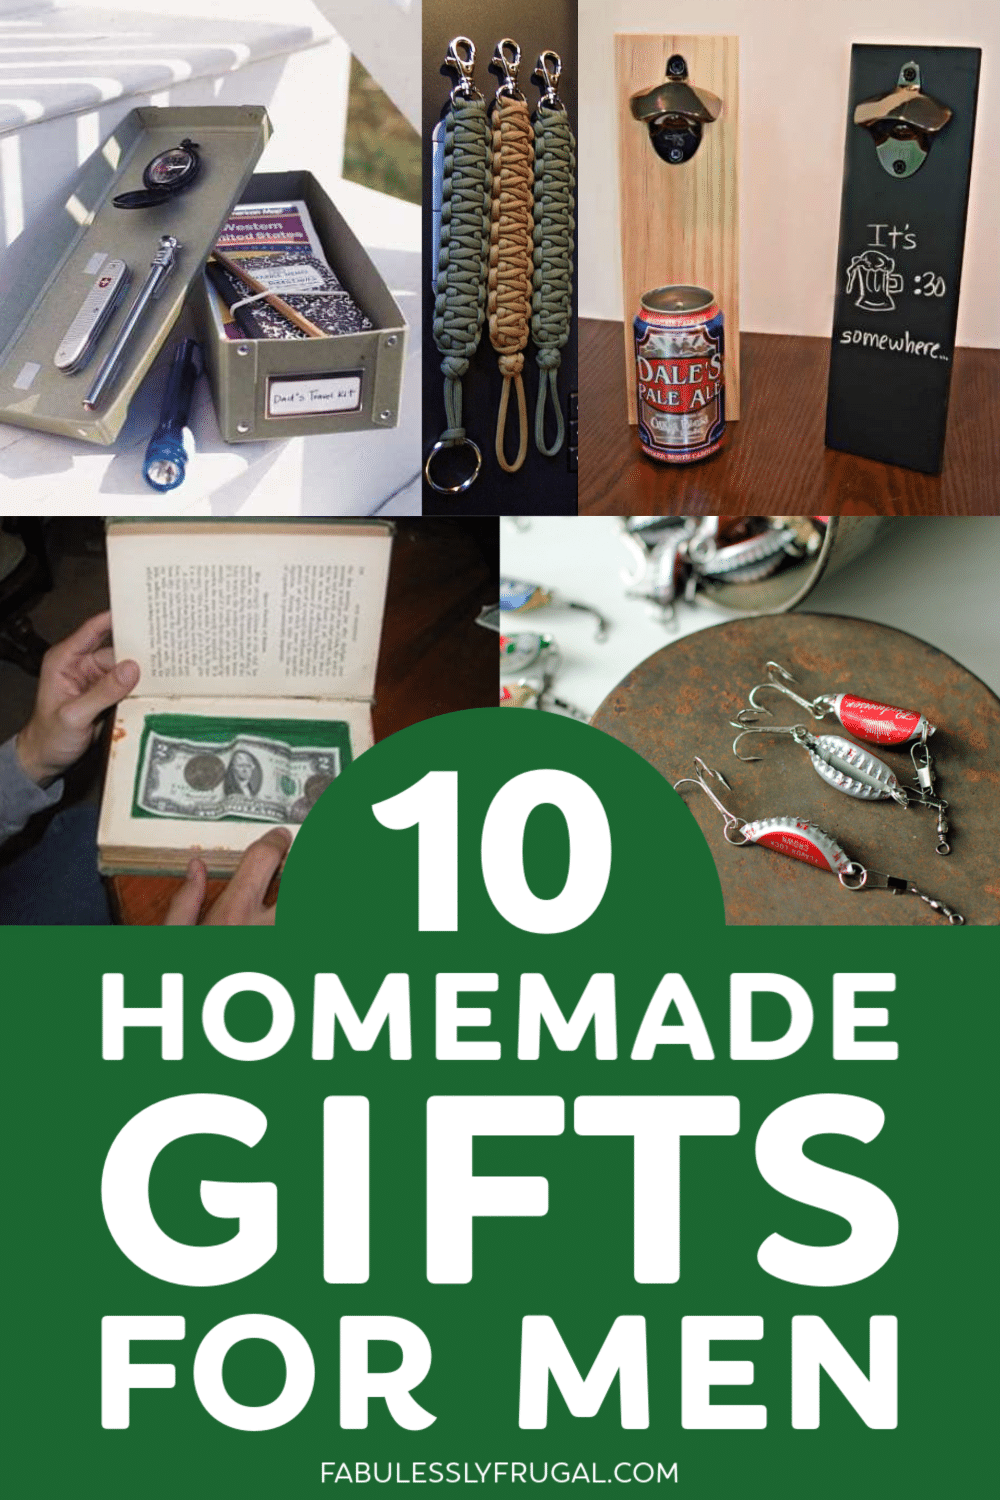 Homemade gifts for men